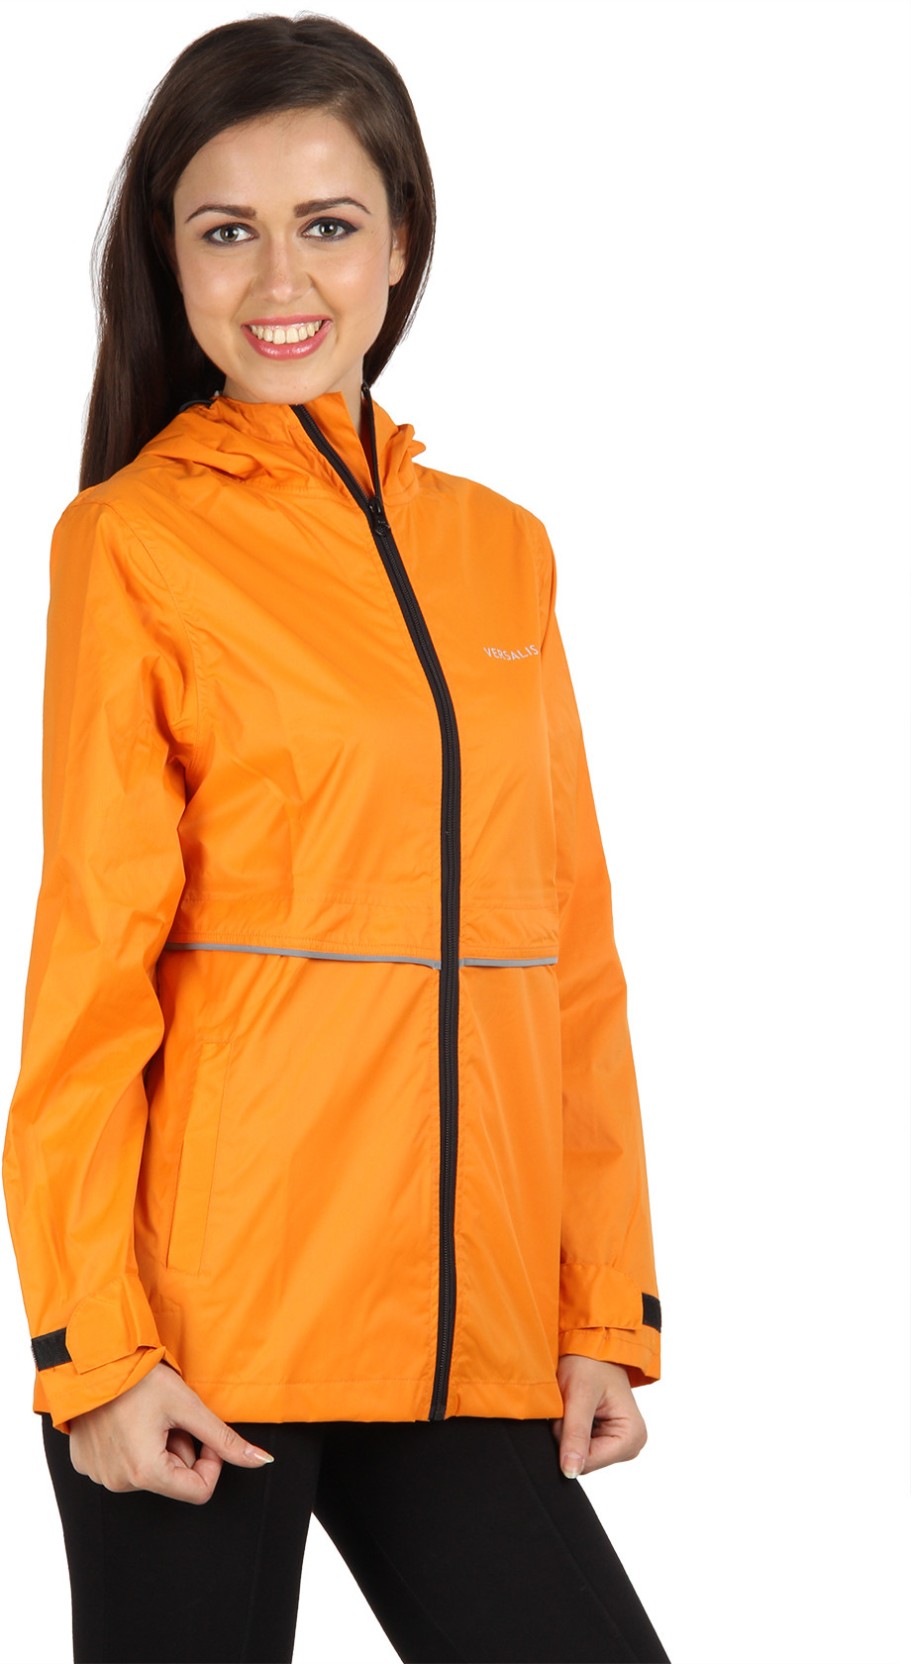 Versalis Solid Women's Raincoat - Buy Orange Versalis Solid Women's ...